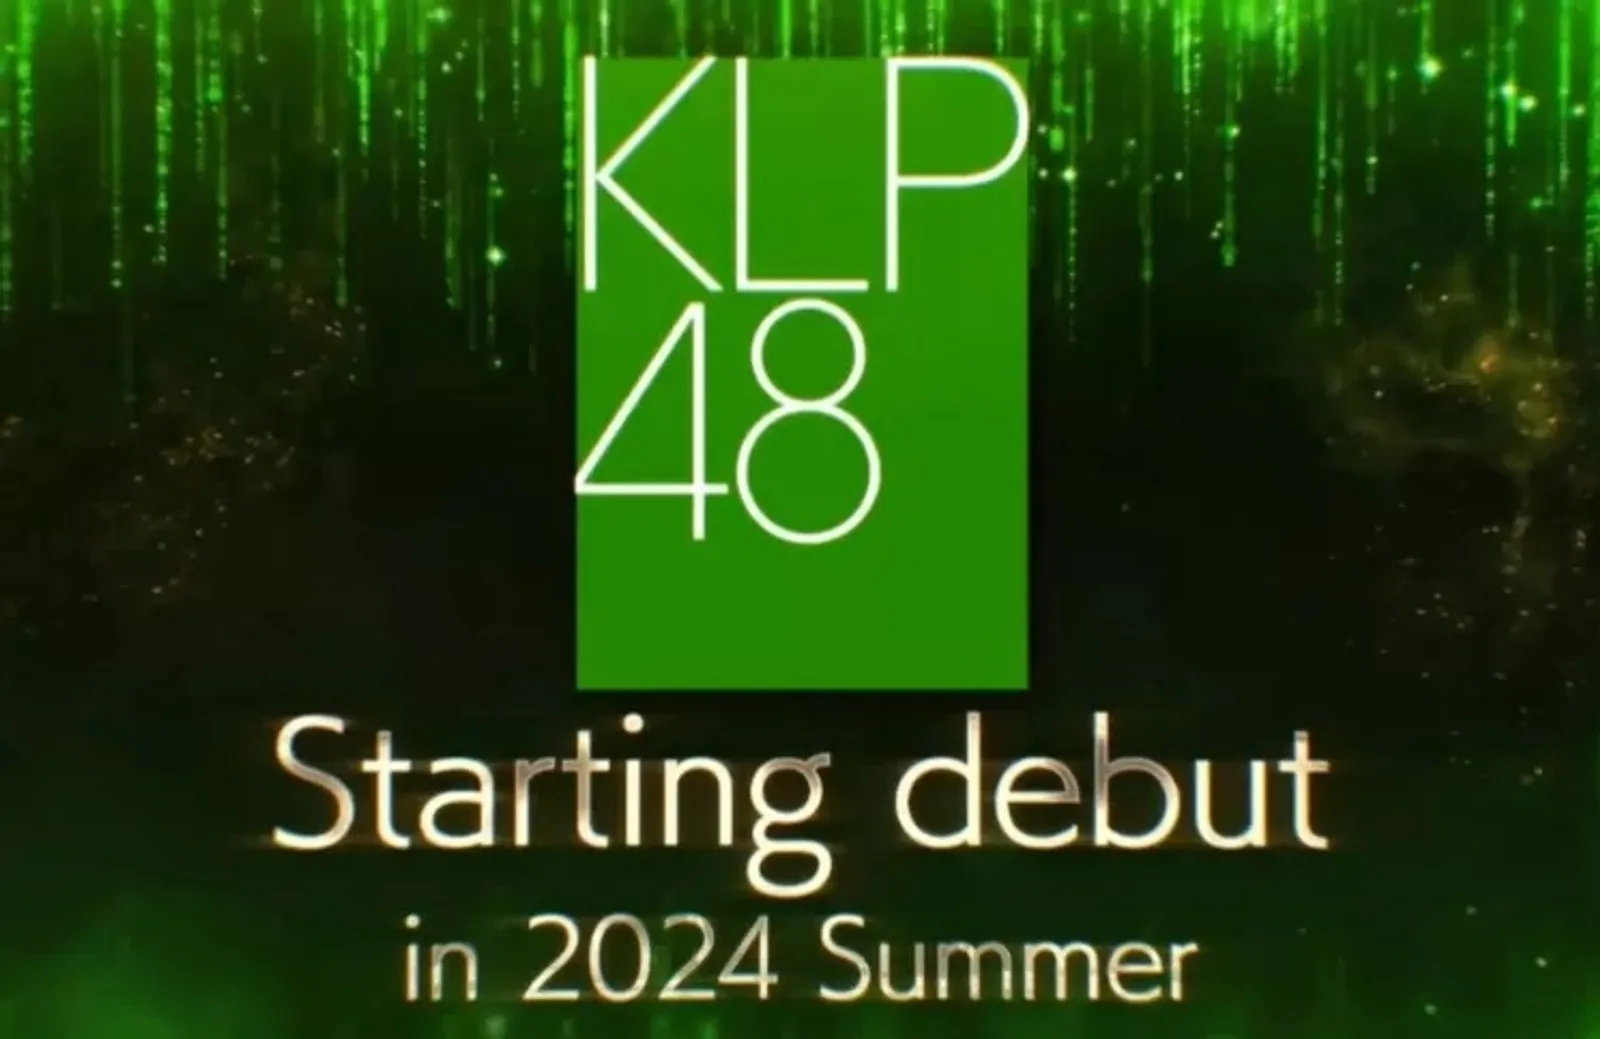 Resmi! KLP48, Sister Group AKB48 Berbasis di Malaysia